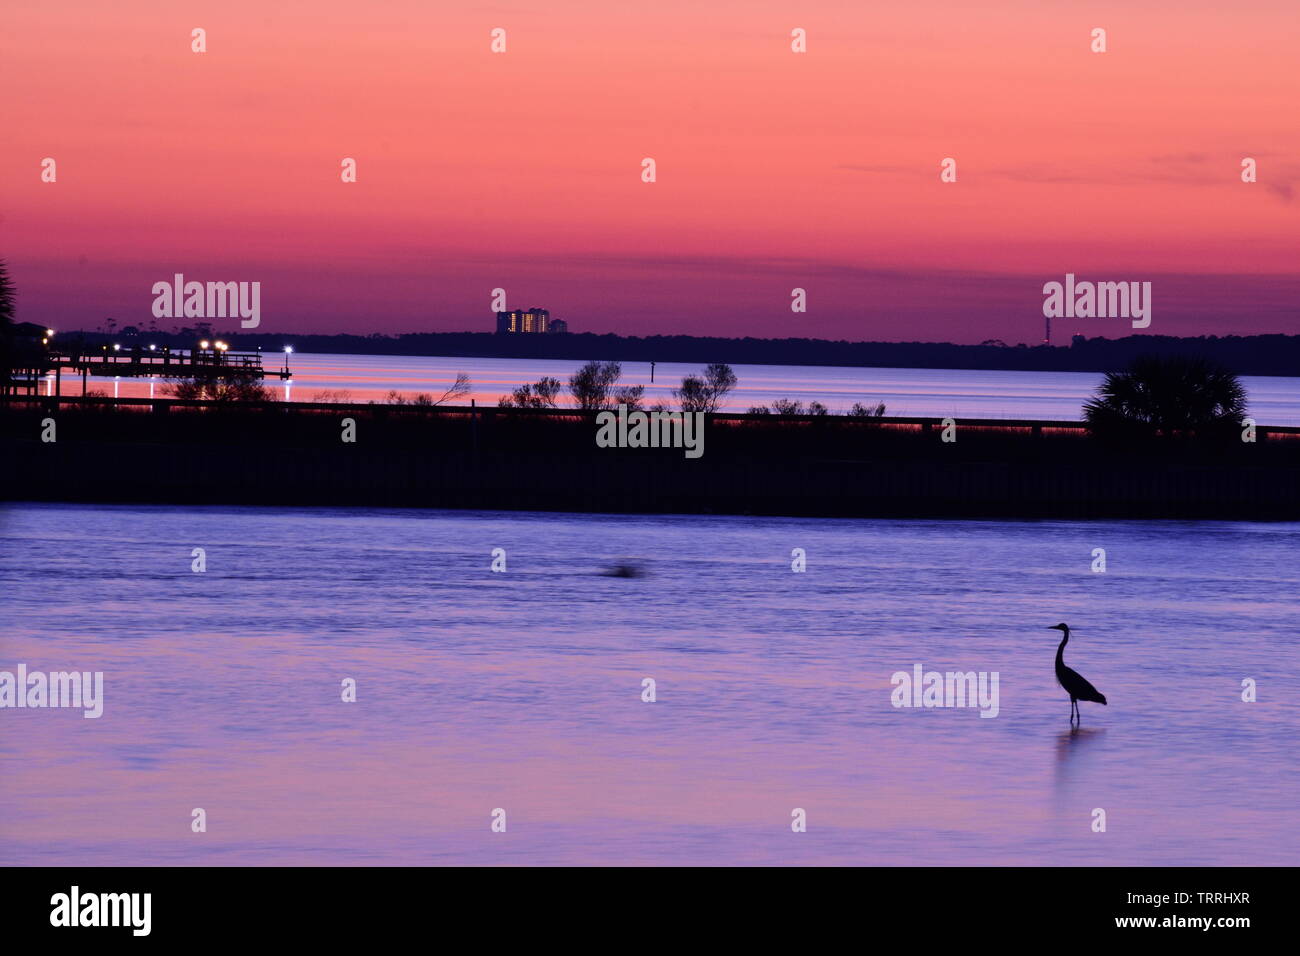 Sunset over Little Lagoon, Gulf Shores, AL Stock Photo